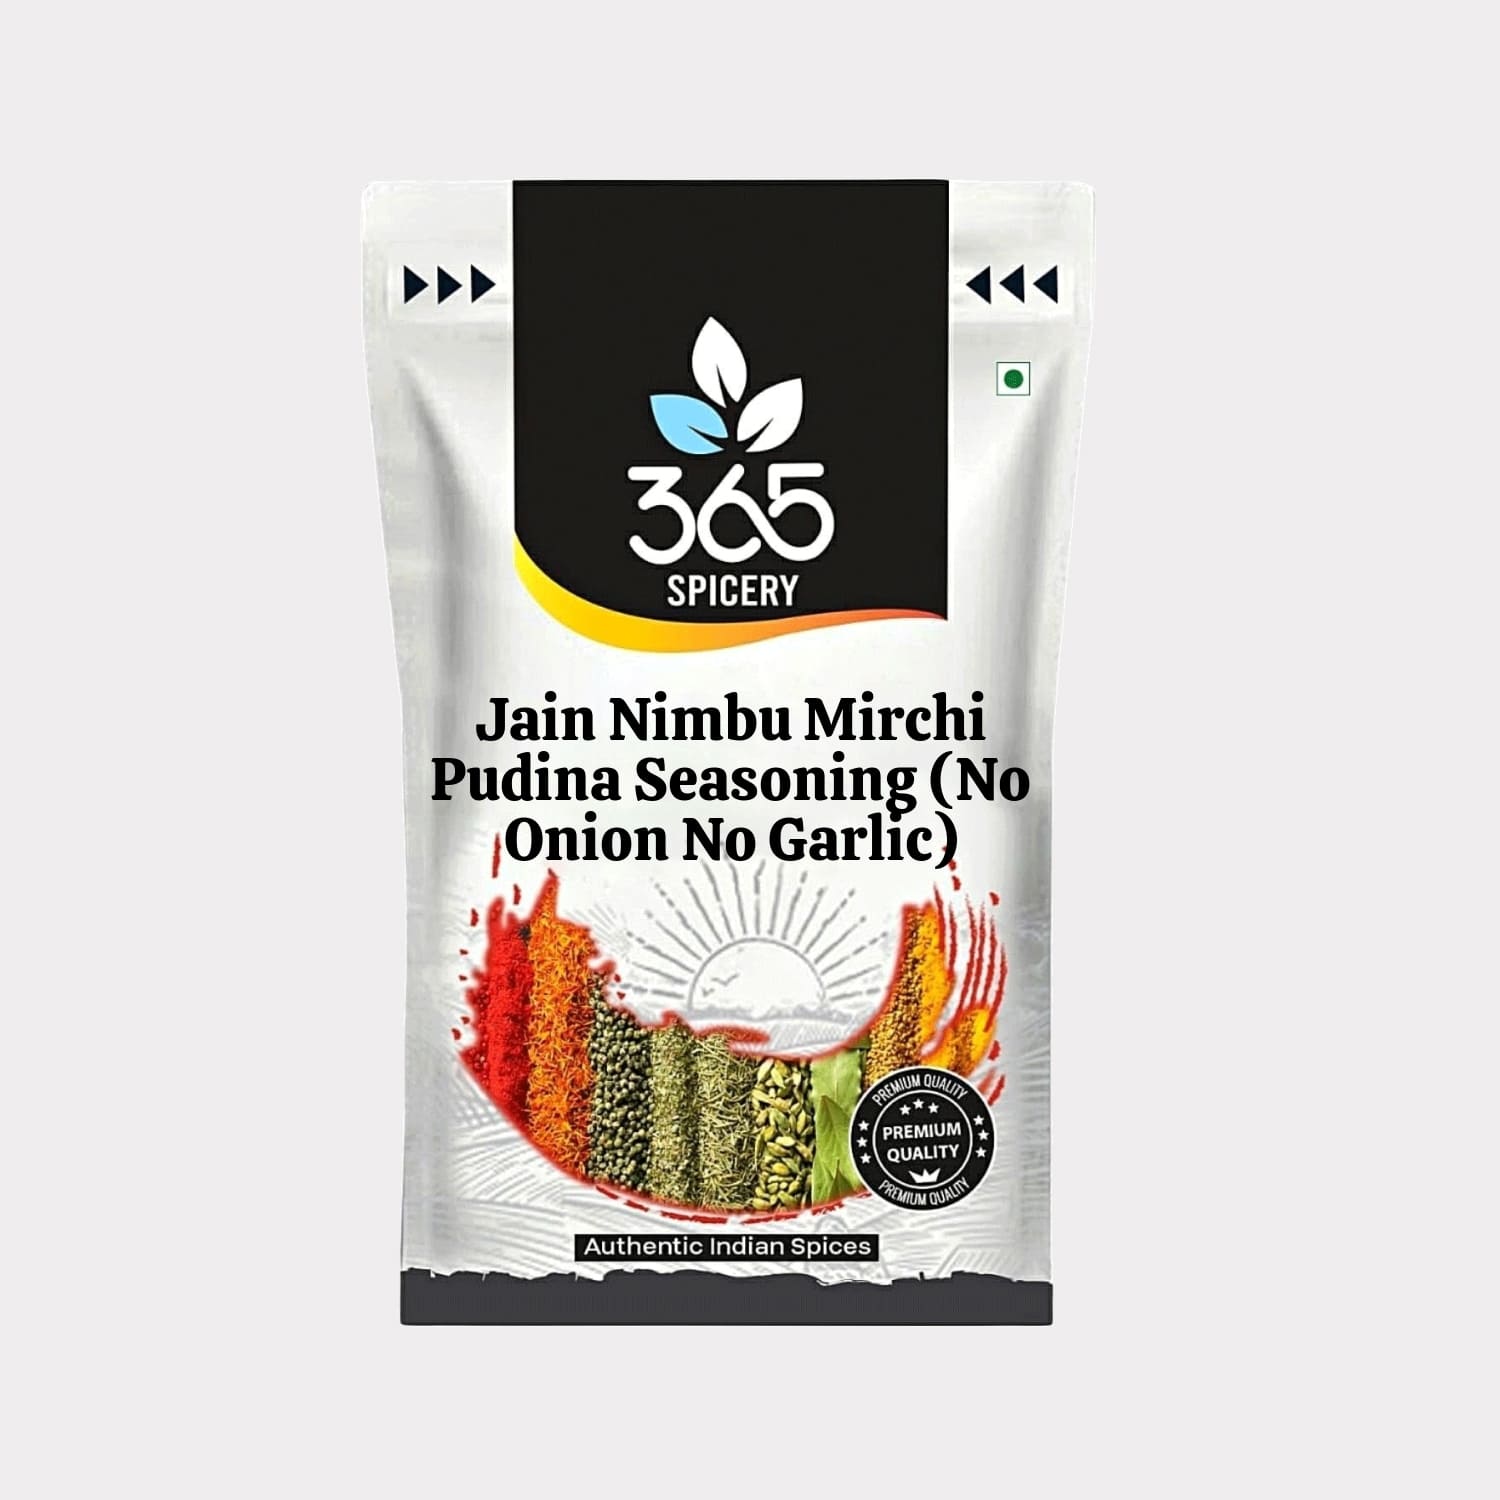 Jain Nimbu Mirchi Pudina Seasoning (No Onion No Garlic)